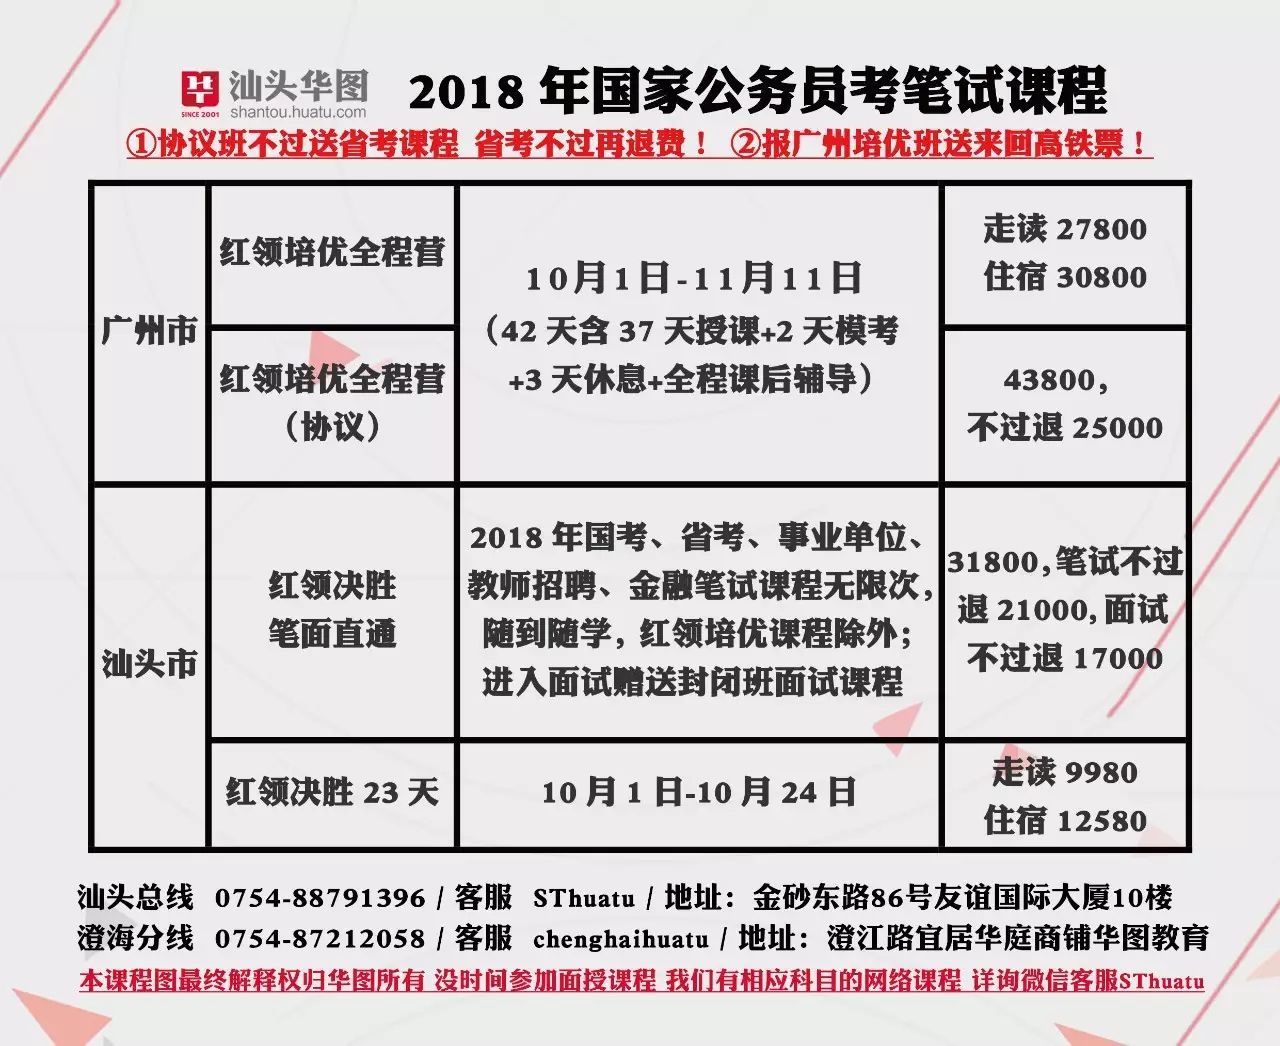 广东省国家税务局事业单位招考笔试时间及地点